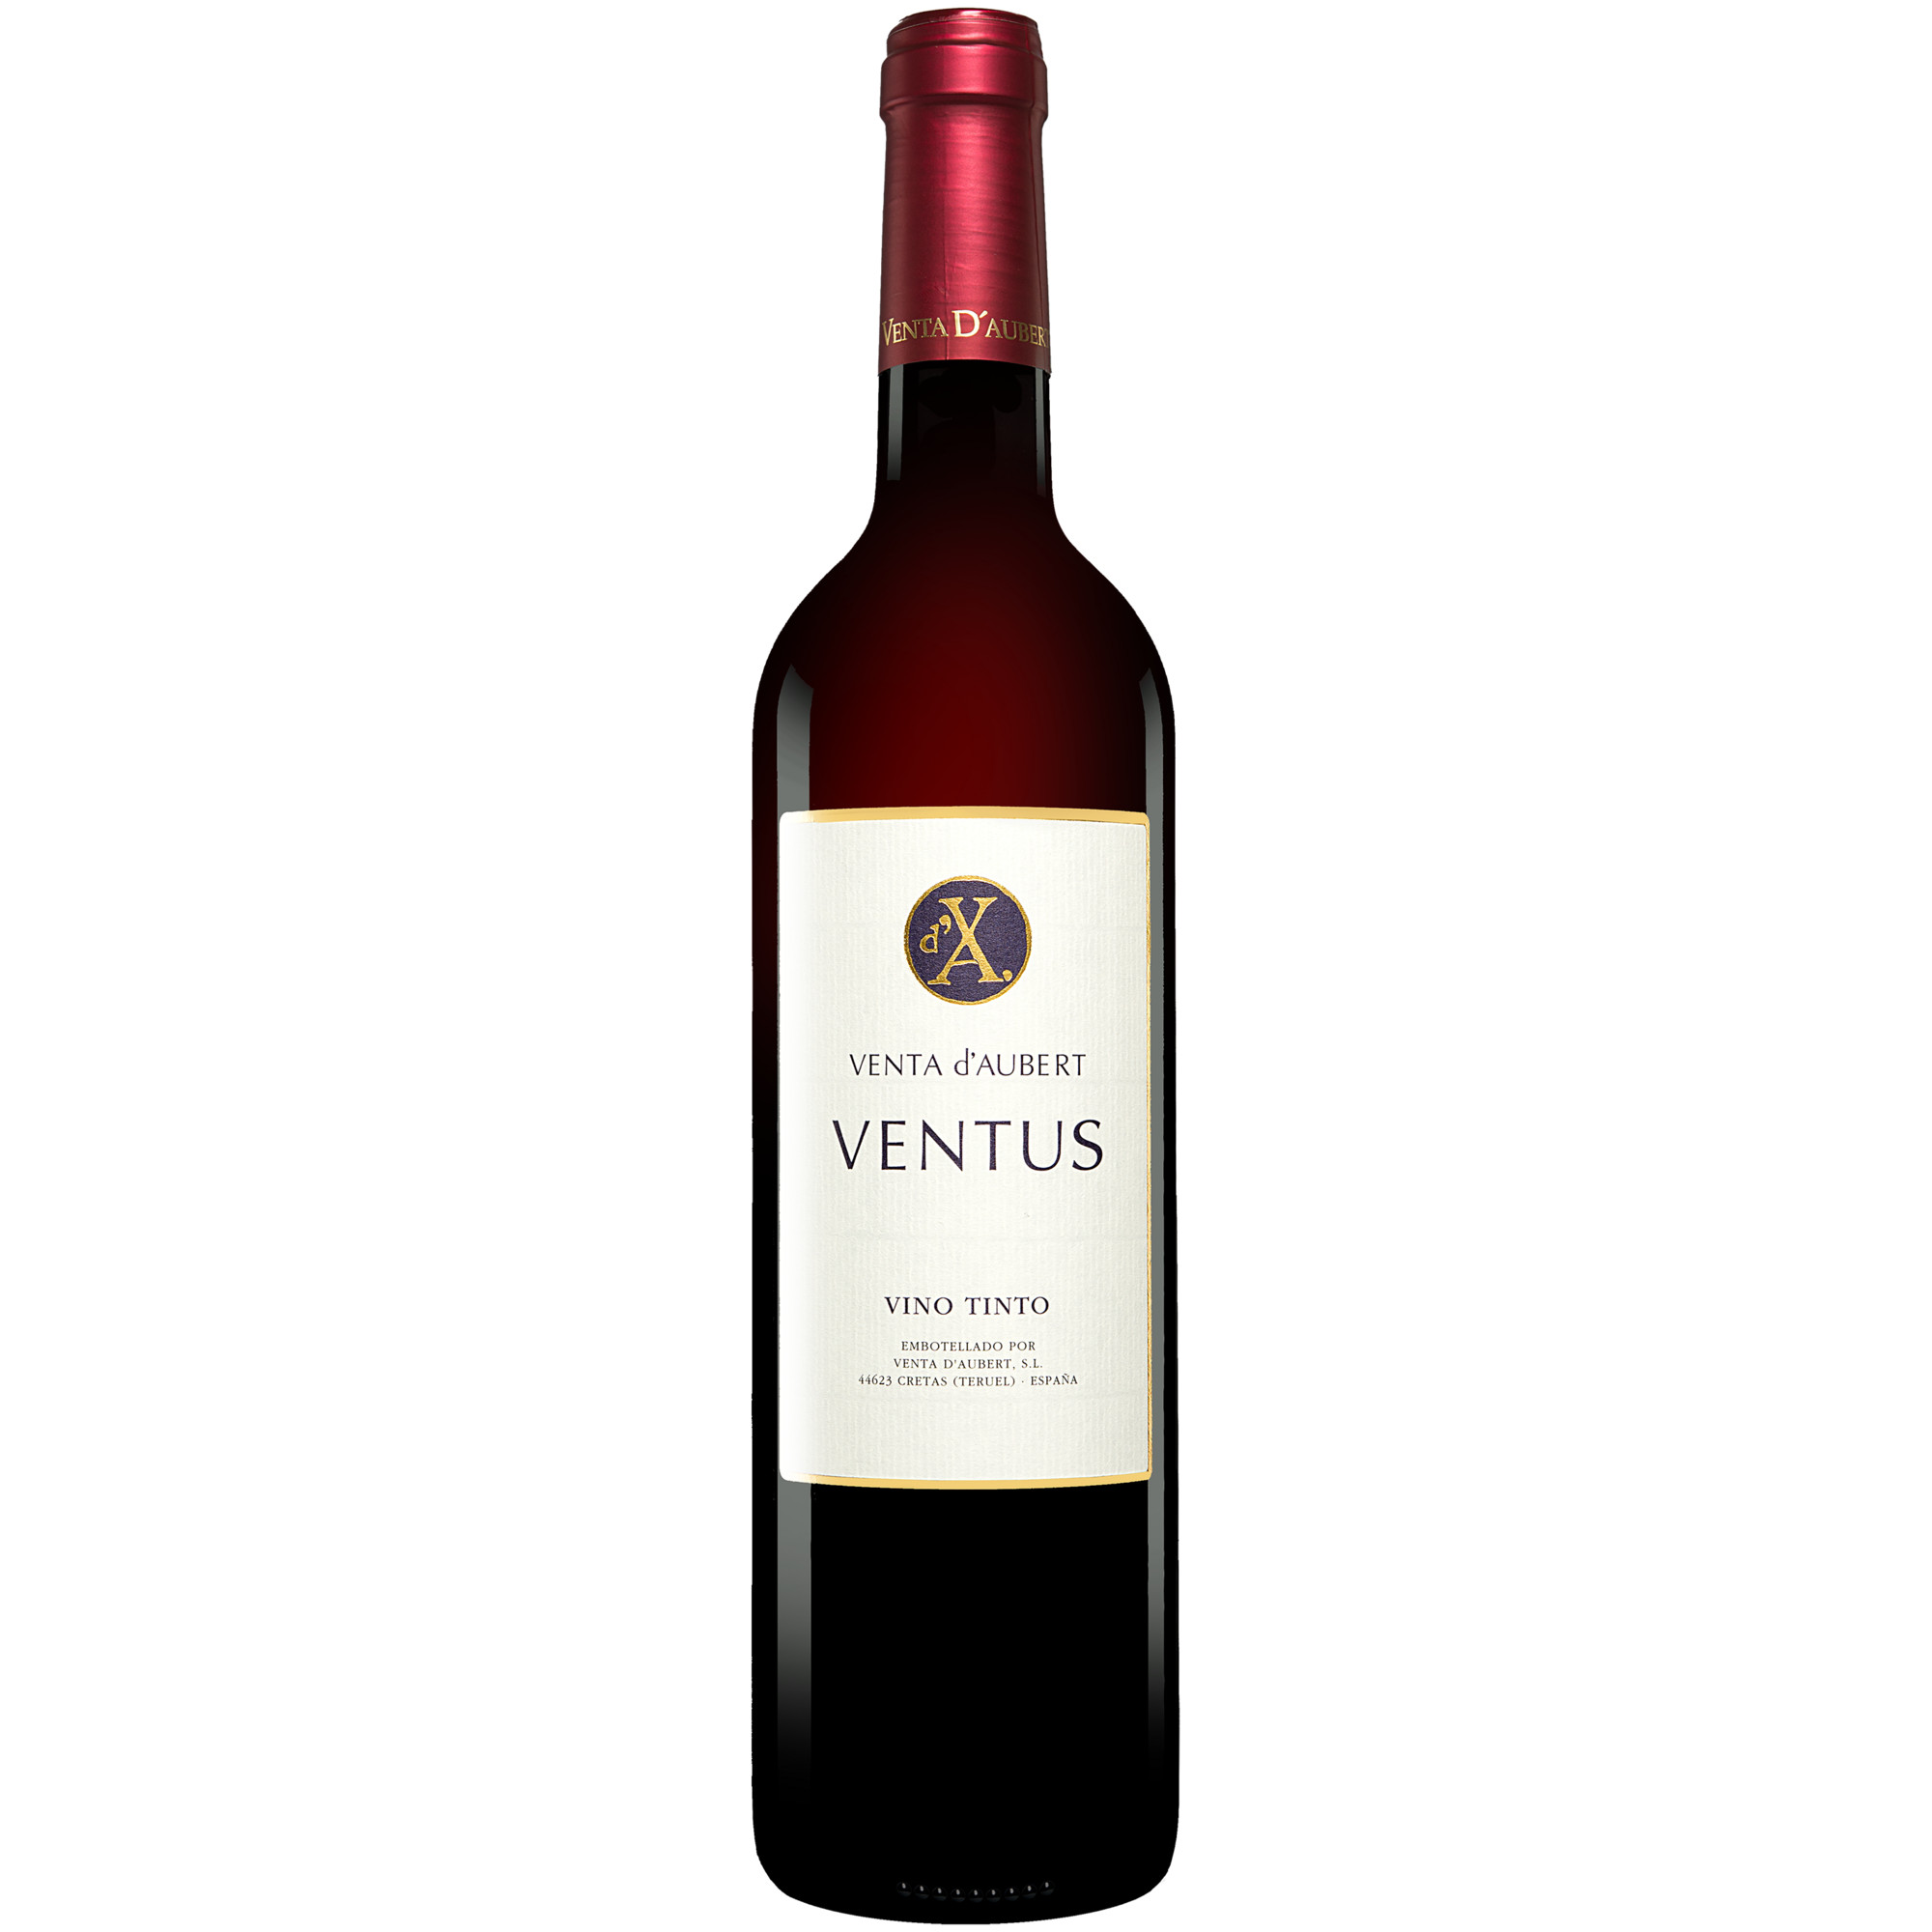 Venta d'Aubert »Ventus« 2016  014% Vol. Rotwein Trocken aus Spanien